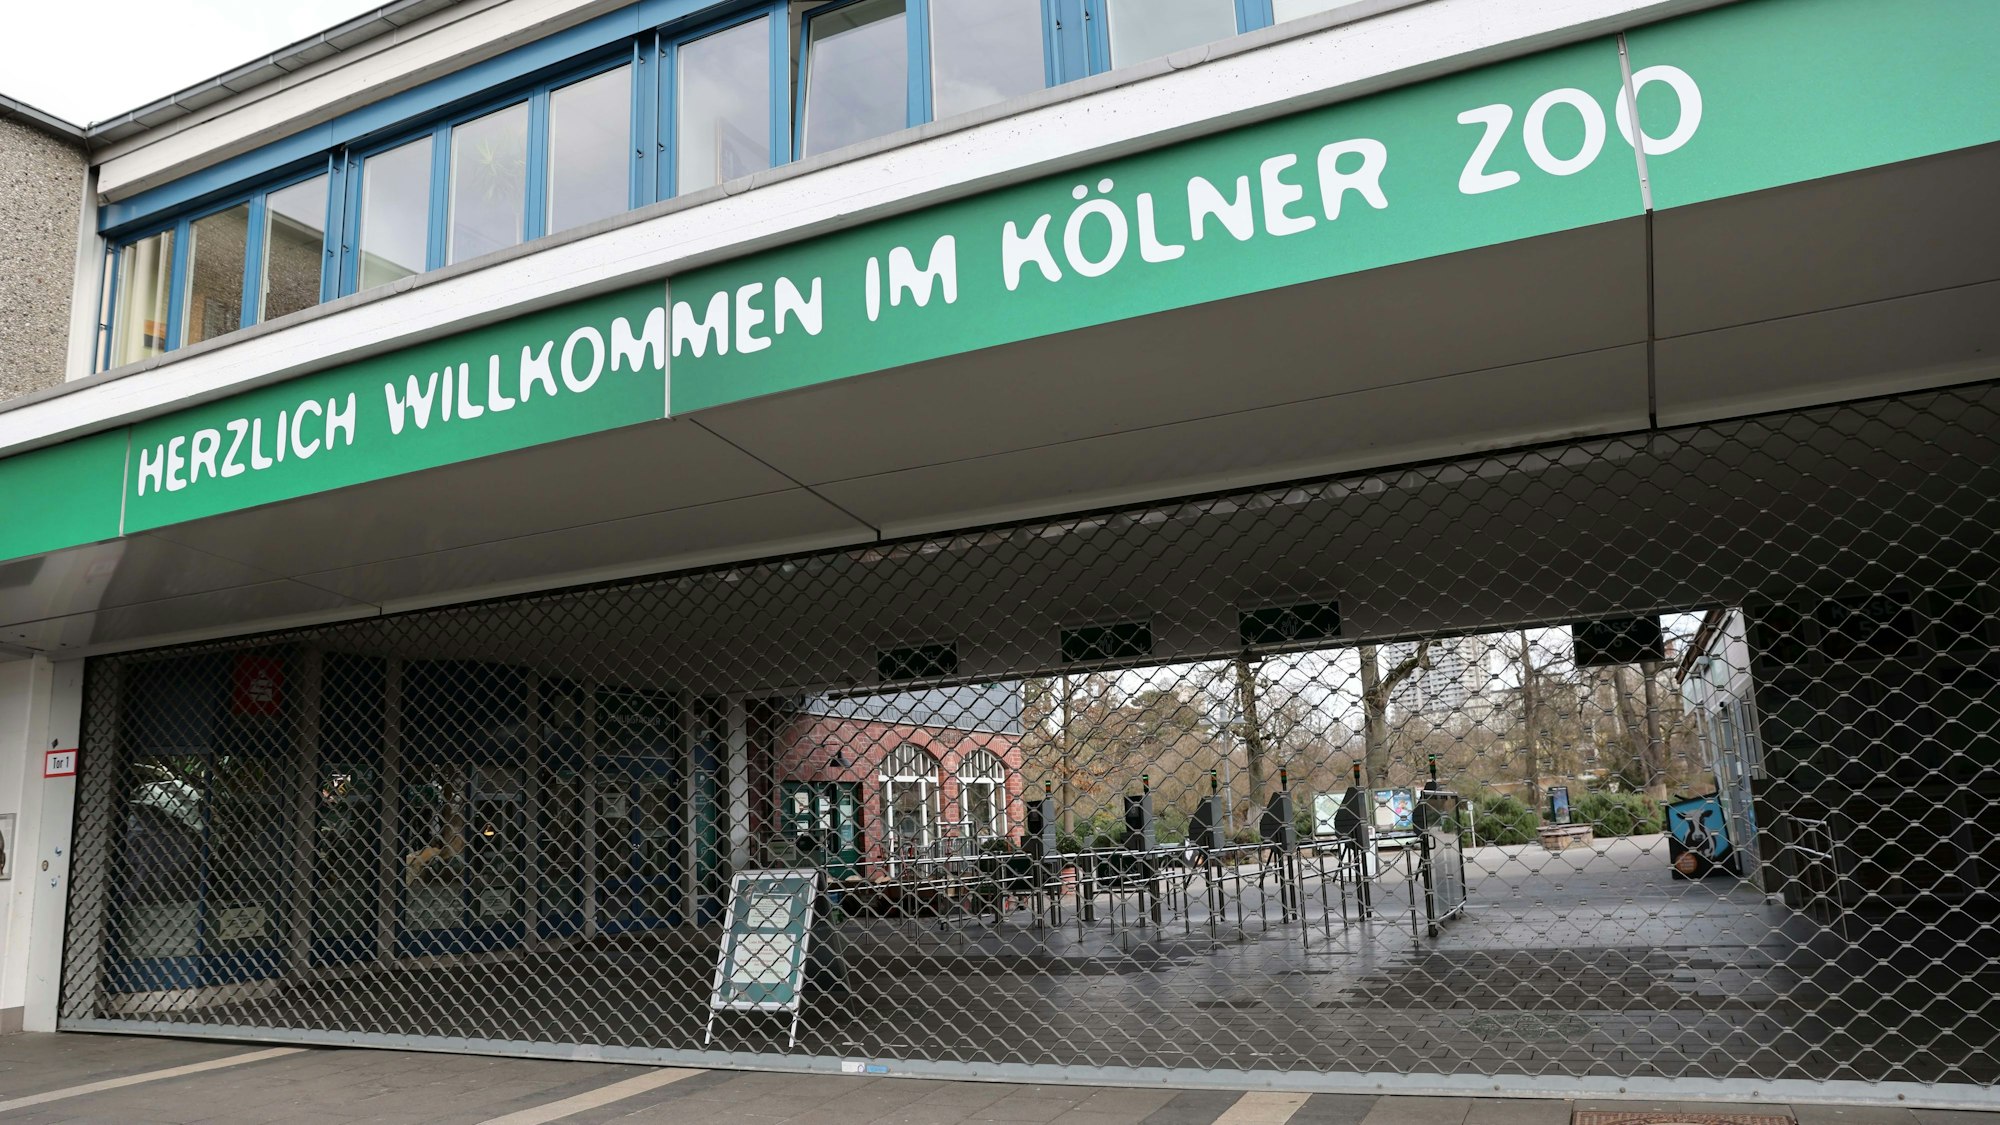 Seit Rosenmontag ist der Zoo für Besucher geschlossen. Am Samstag (17. Februar) soll er wieder geöffnet sein.